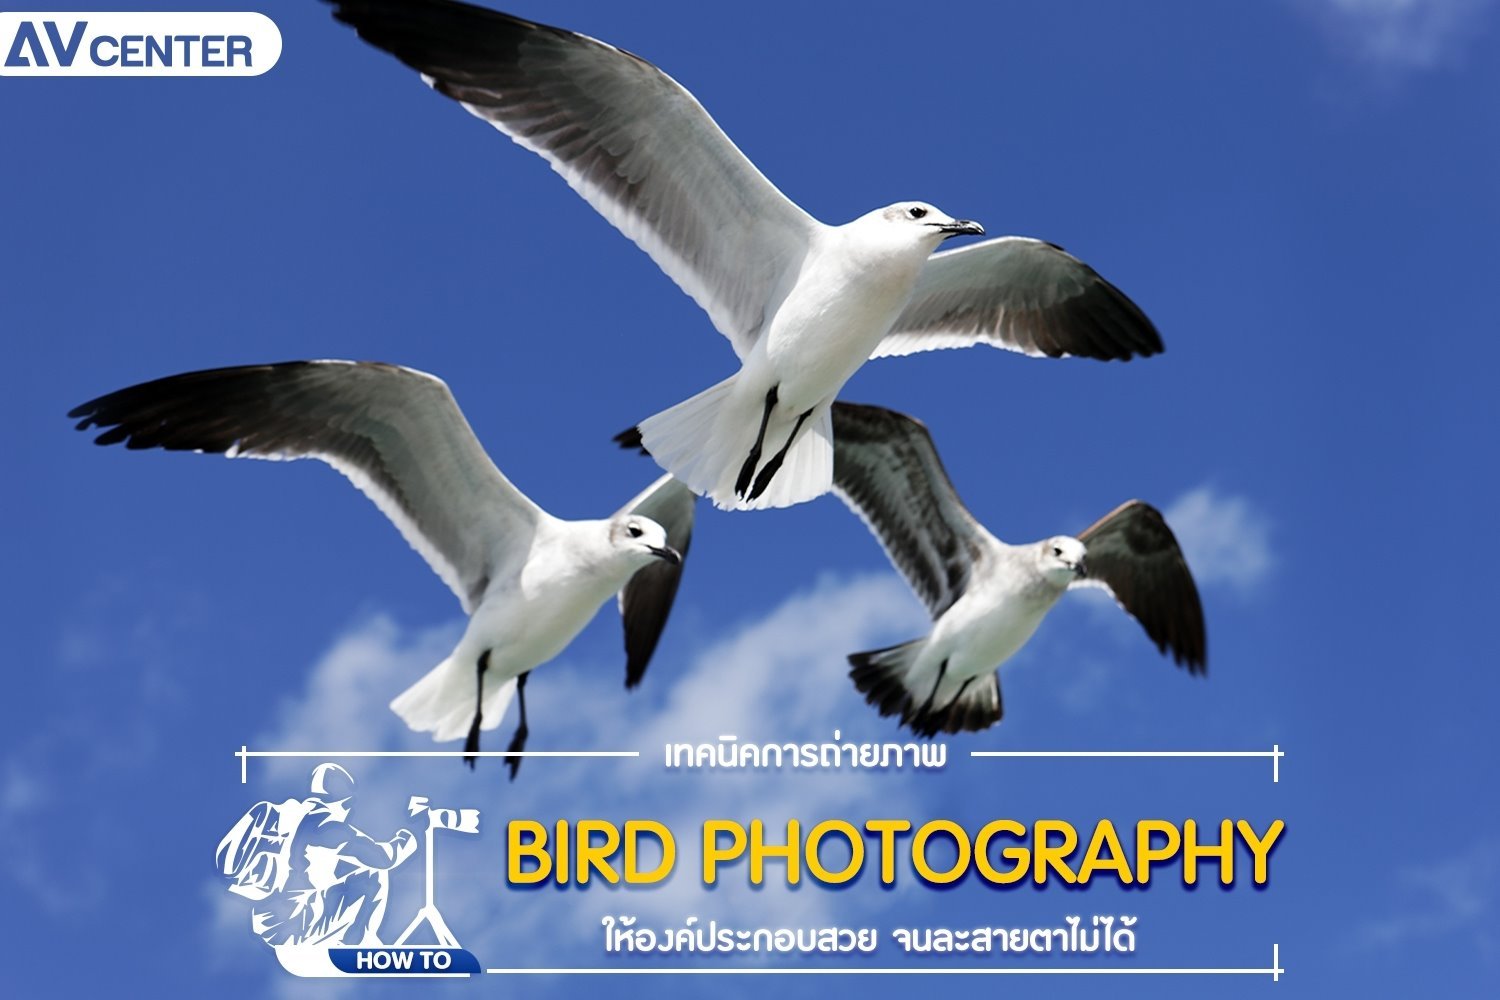 เทคนิคการถ่ายภาพ Bird Photography ให้องค์ประกอบสวยจนละสายตาไม่ได้